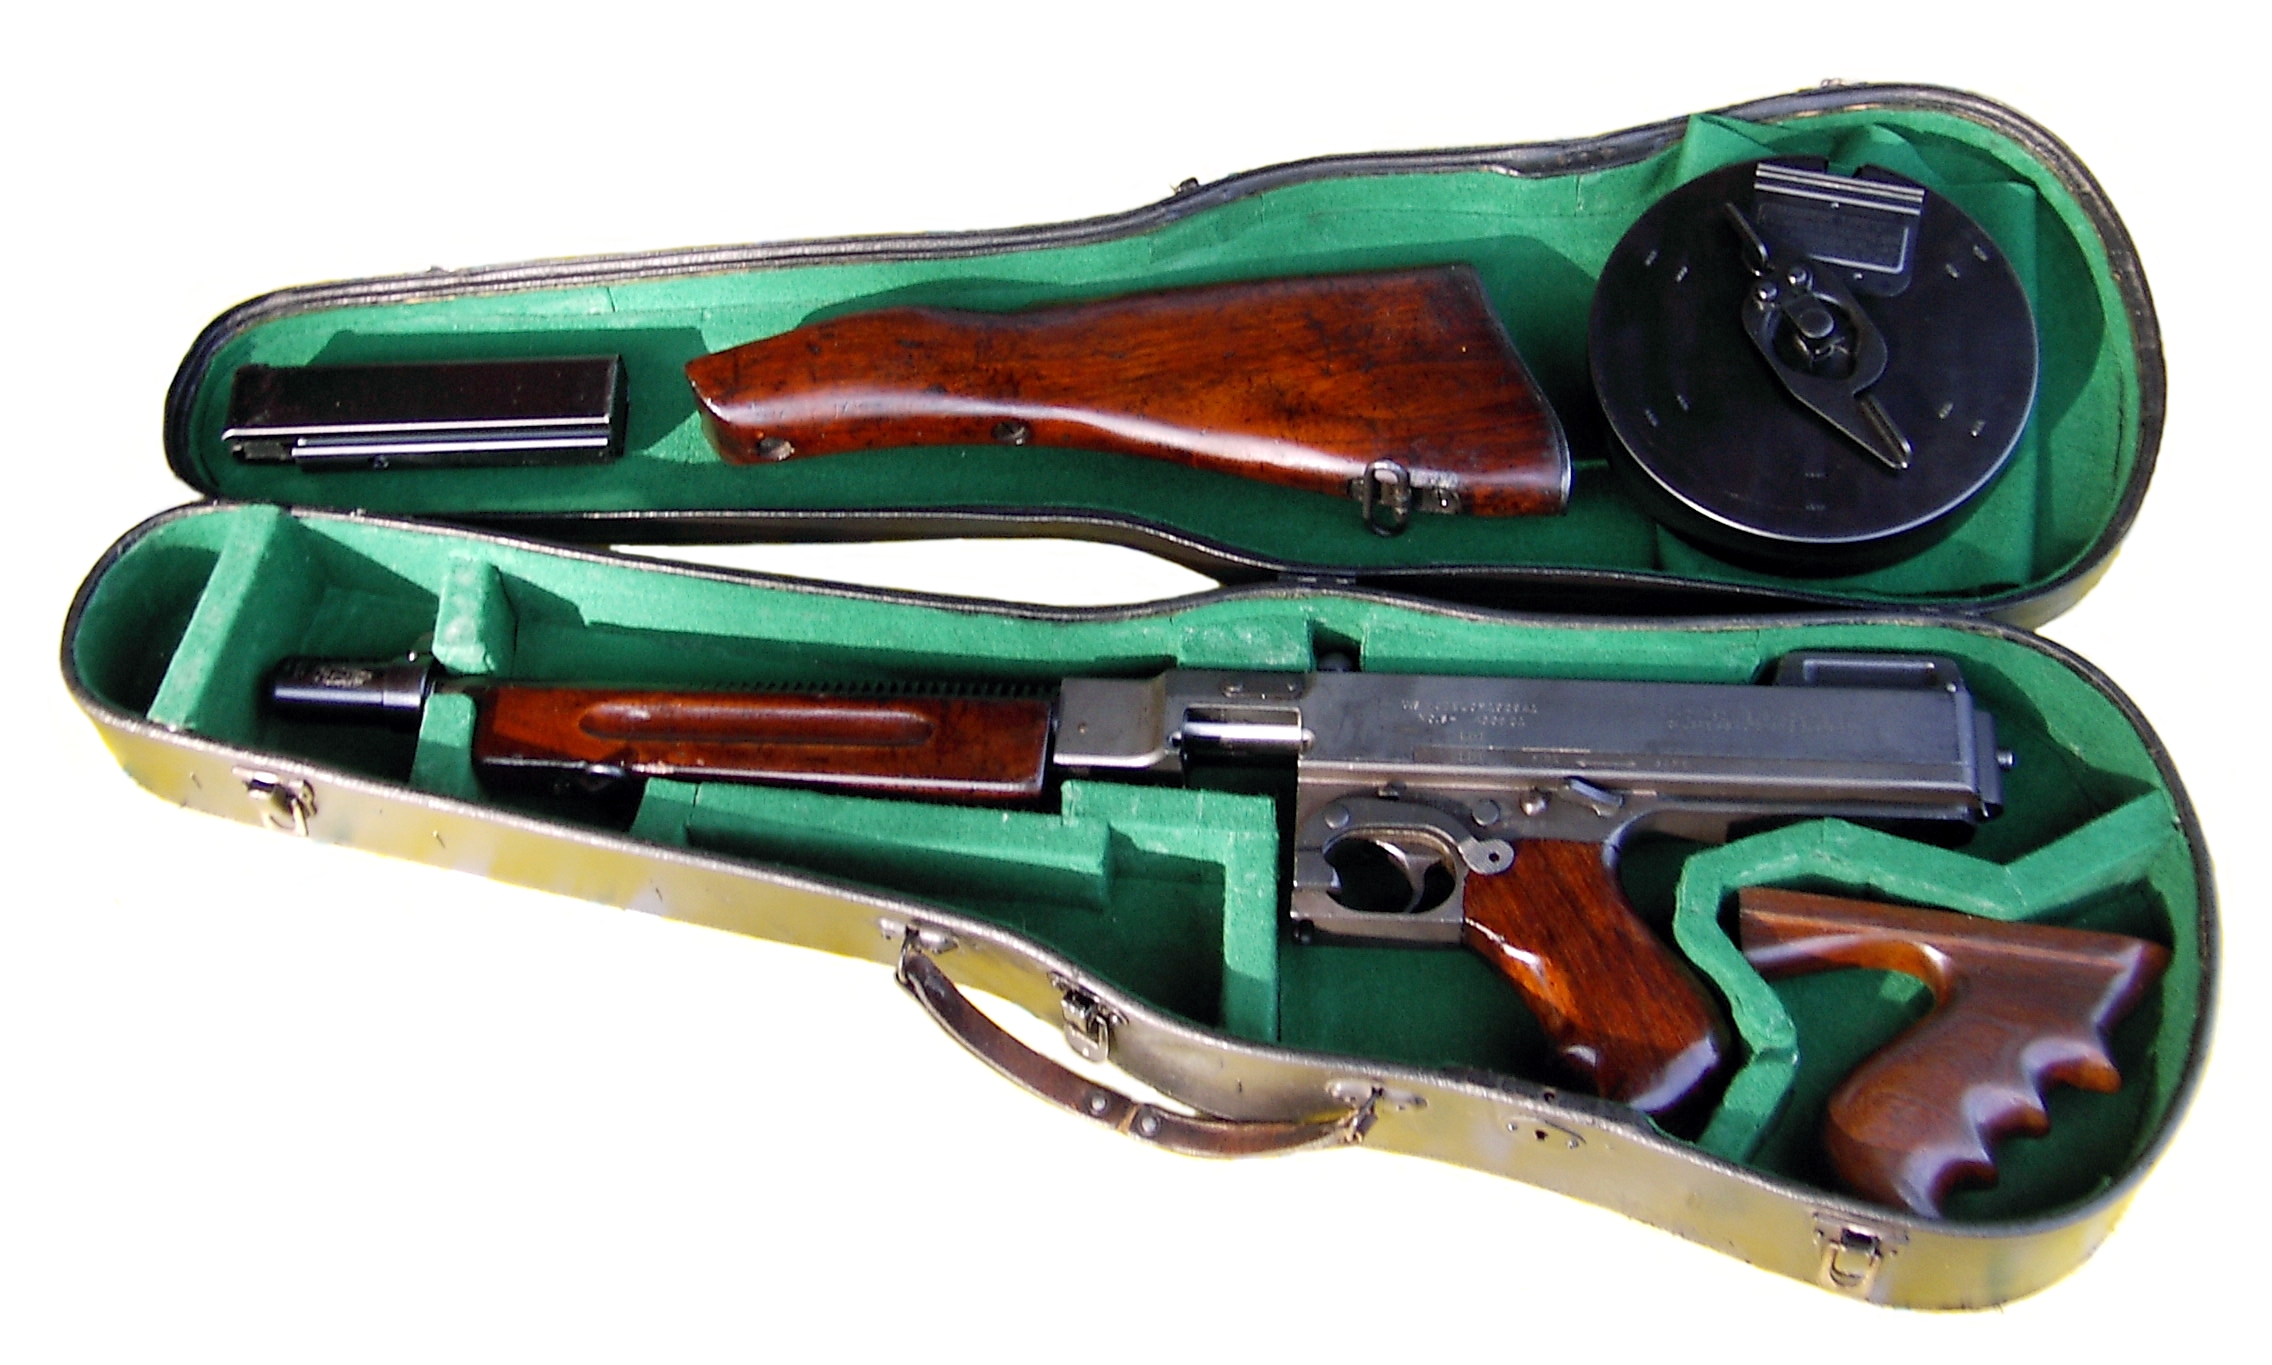 Thompson Submachine Gun #23